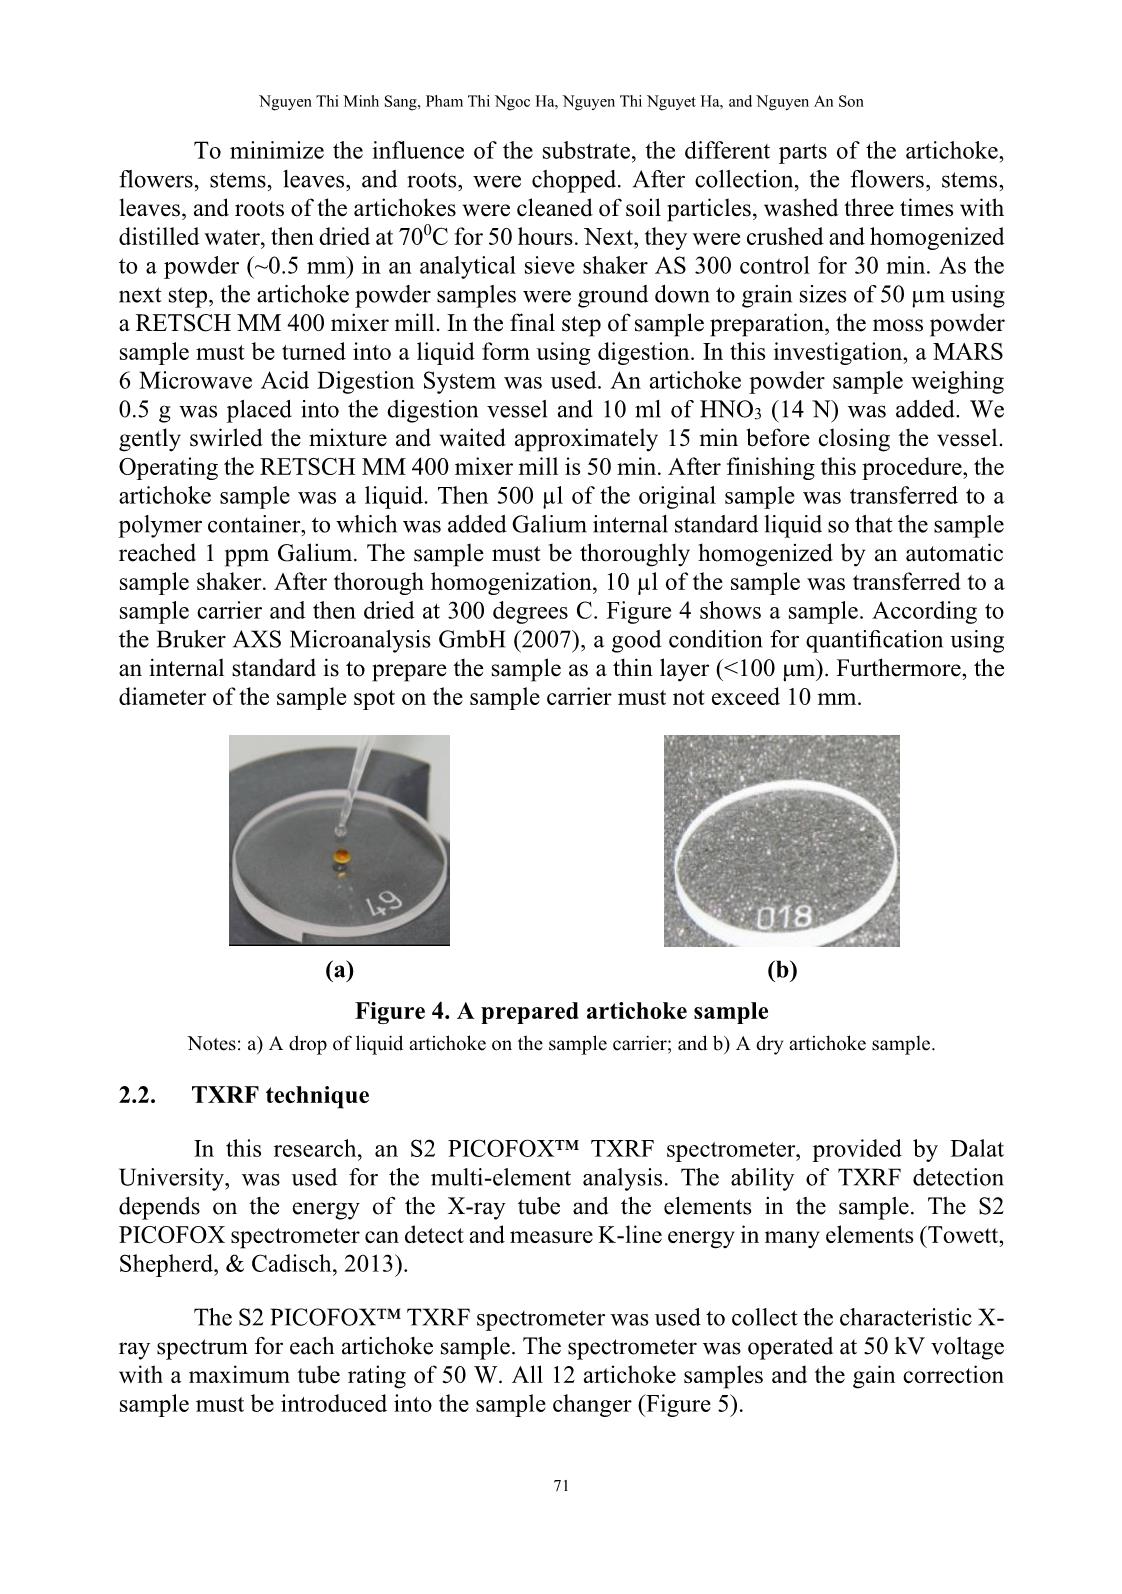 Phân tích định lượng các nguyên tố vết trong cây artichoke tại thành phố đà lạt sử dụng phương pháp huỳnh quang tia X phản xạ toàn phần trang 5